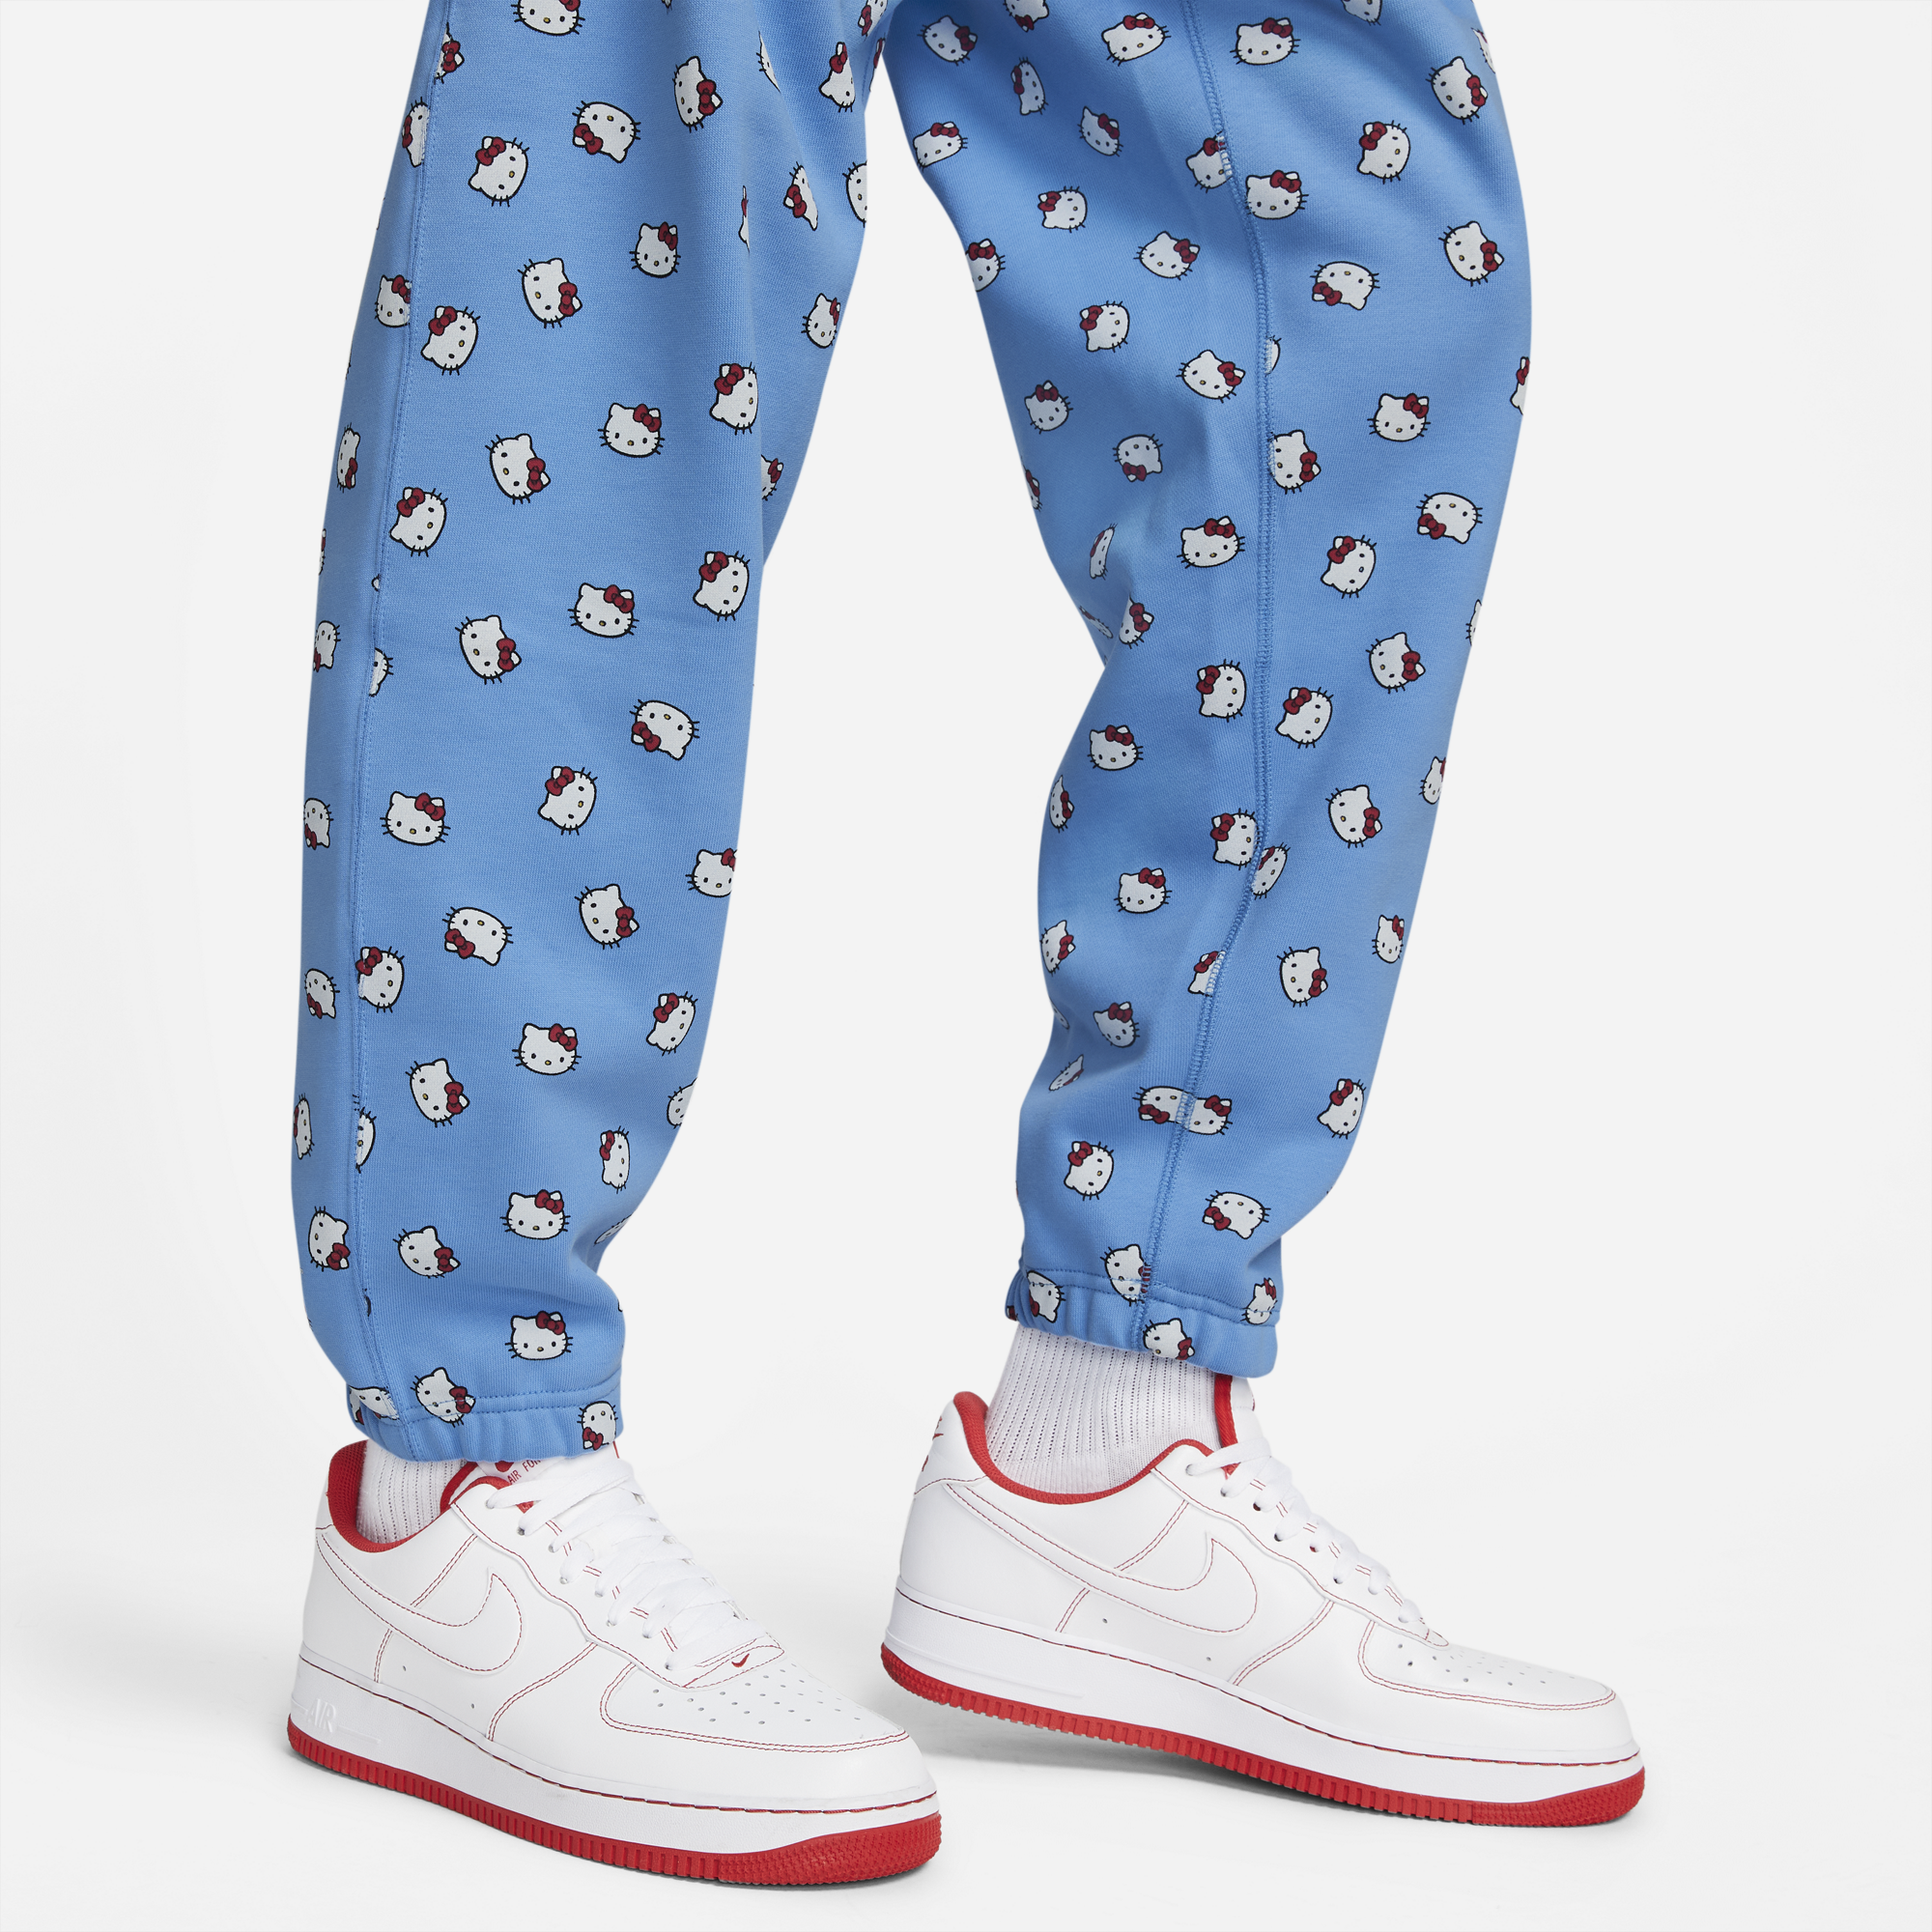 Nike x Hello Kitty Fleece Pant